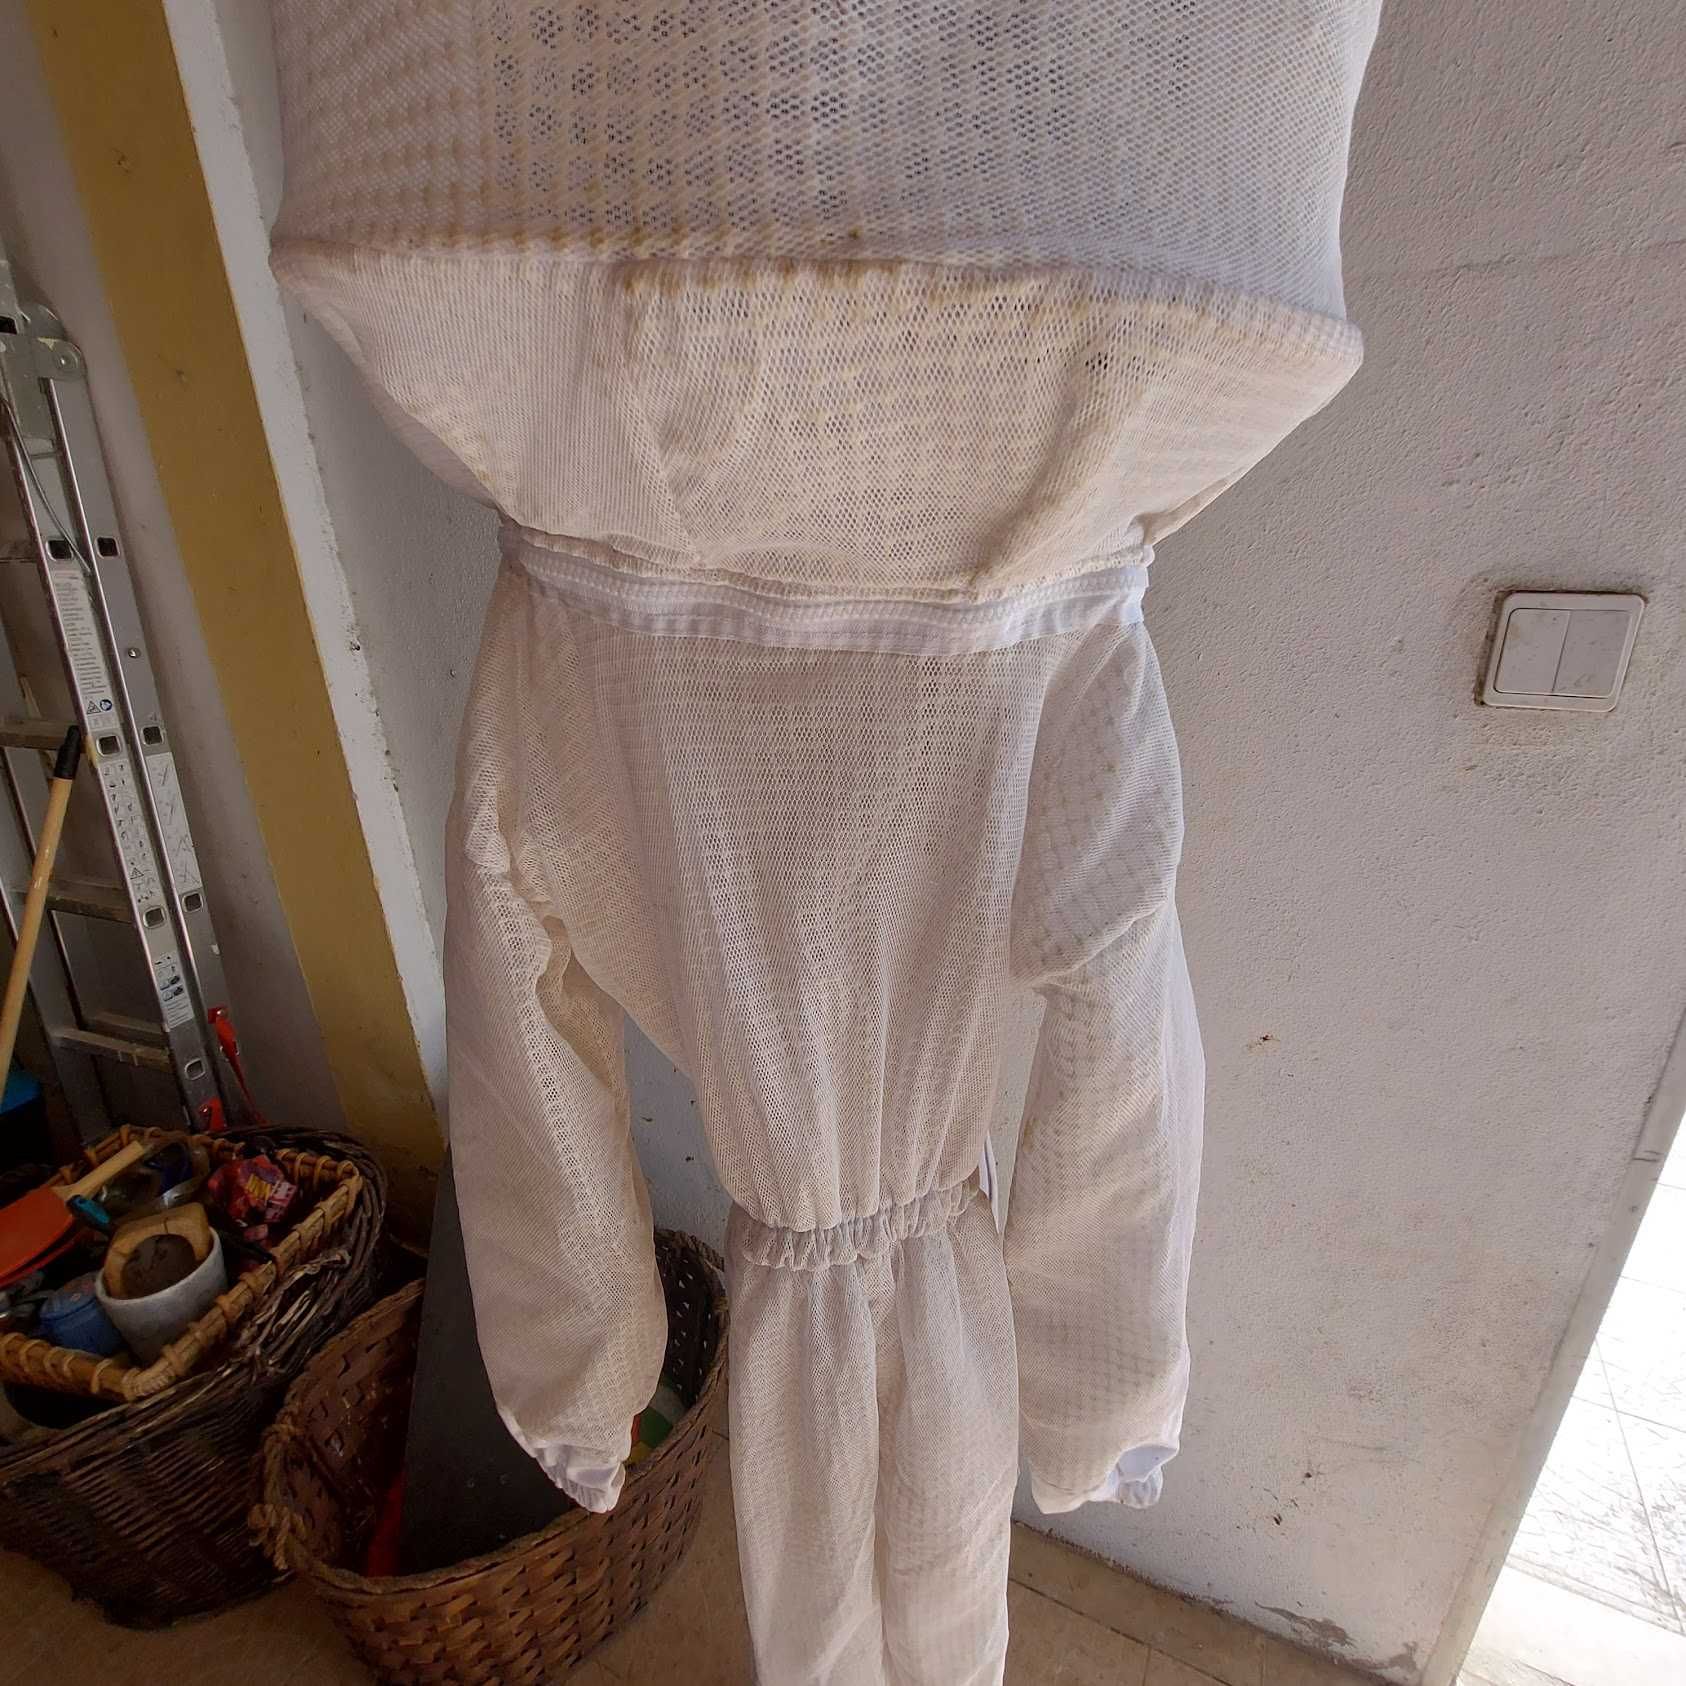 Fato apicultor criança ultra ventilado - pouco uso